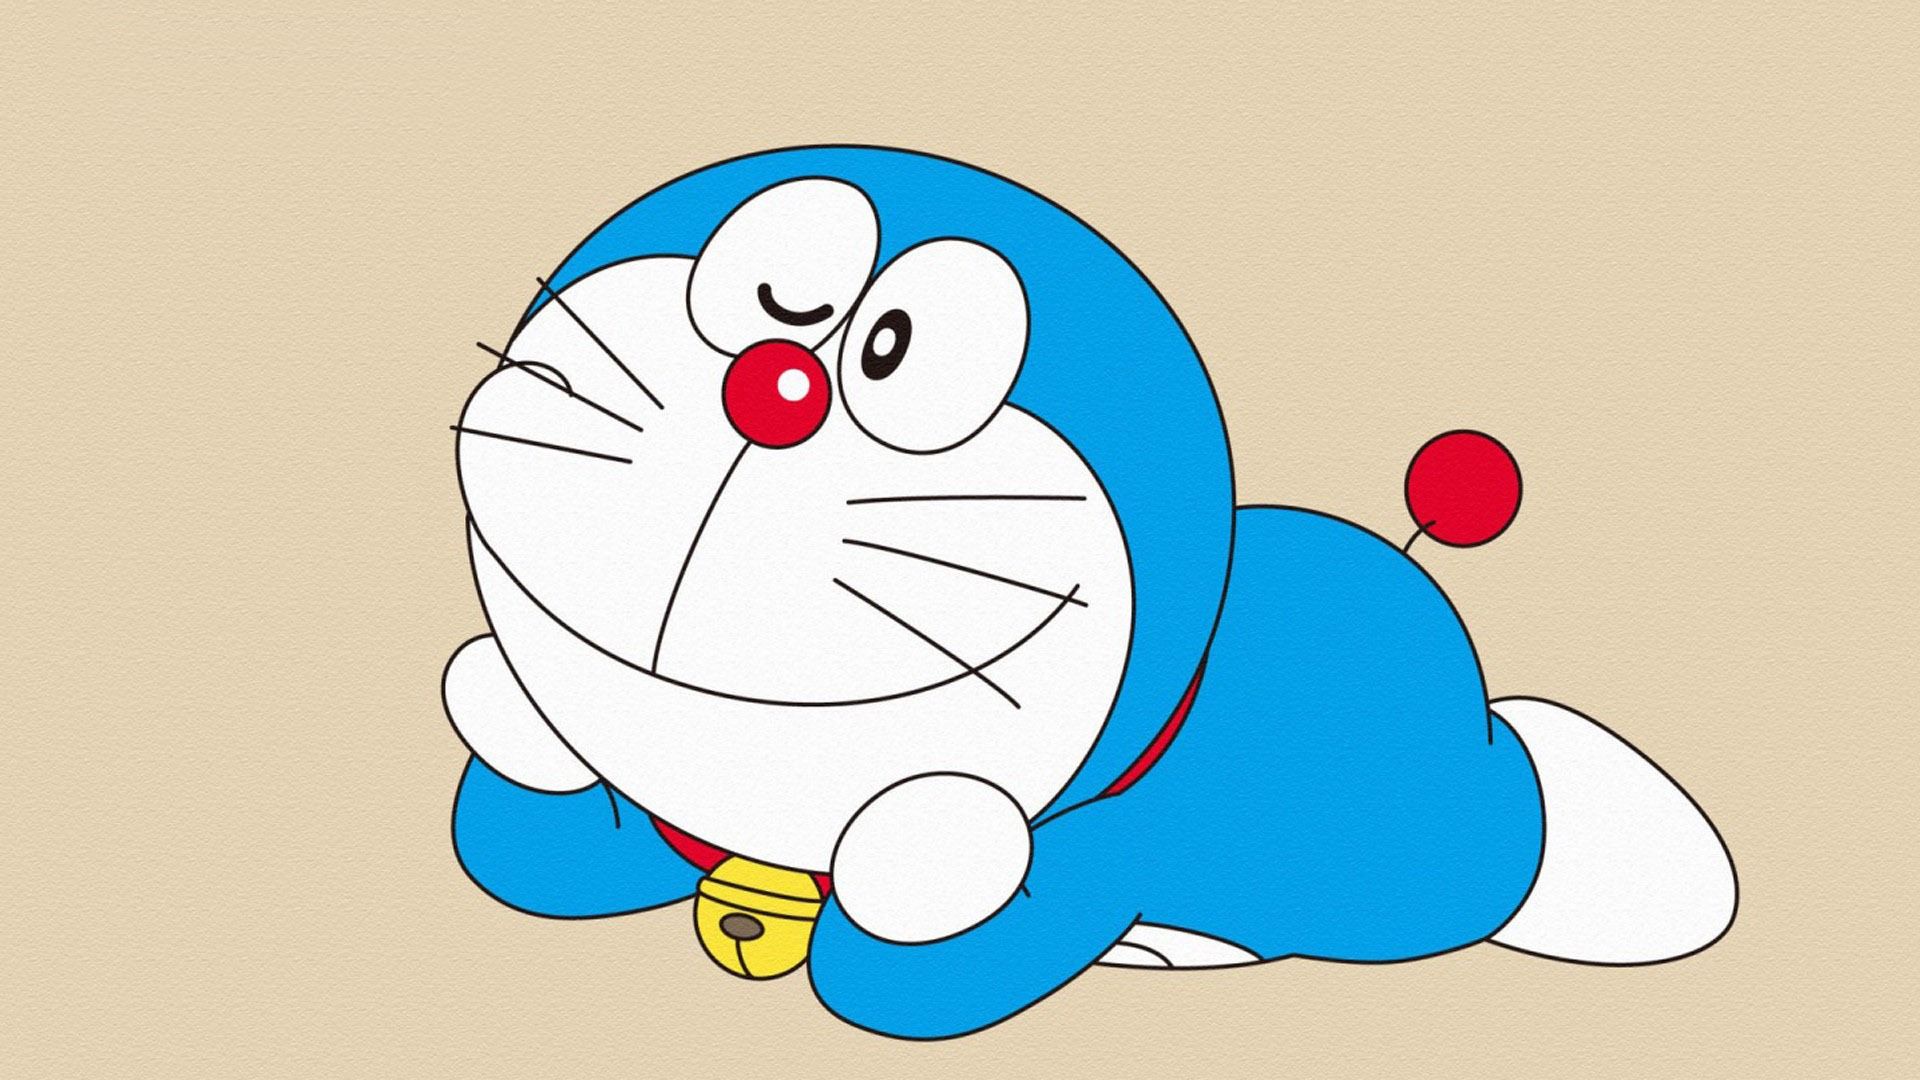 Free Download Doraemon Background